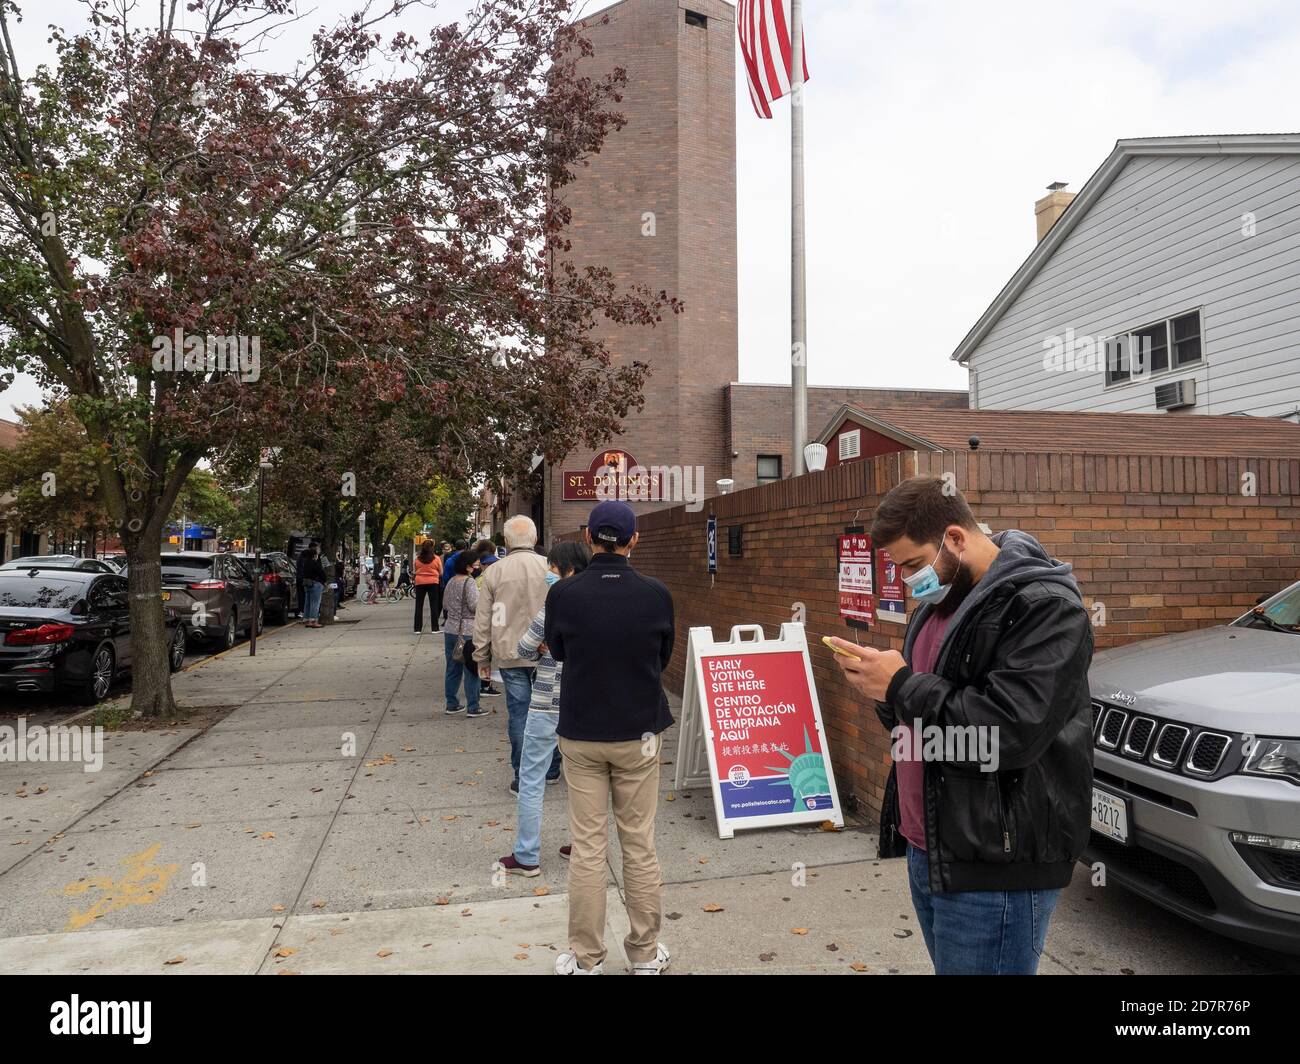 Brooklyn, NY, EE.UU. - 24 de octubre de 2020: La gente espera en fila para la votación presidencial temprana en la Iglesia Católica de San Dominic, Brooklyn en medio de coronavirus Foto de stock